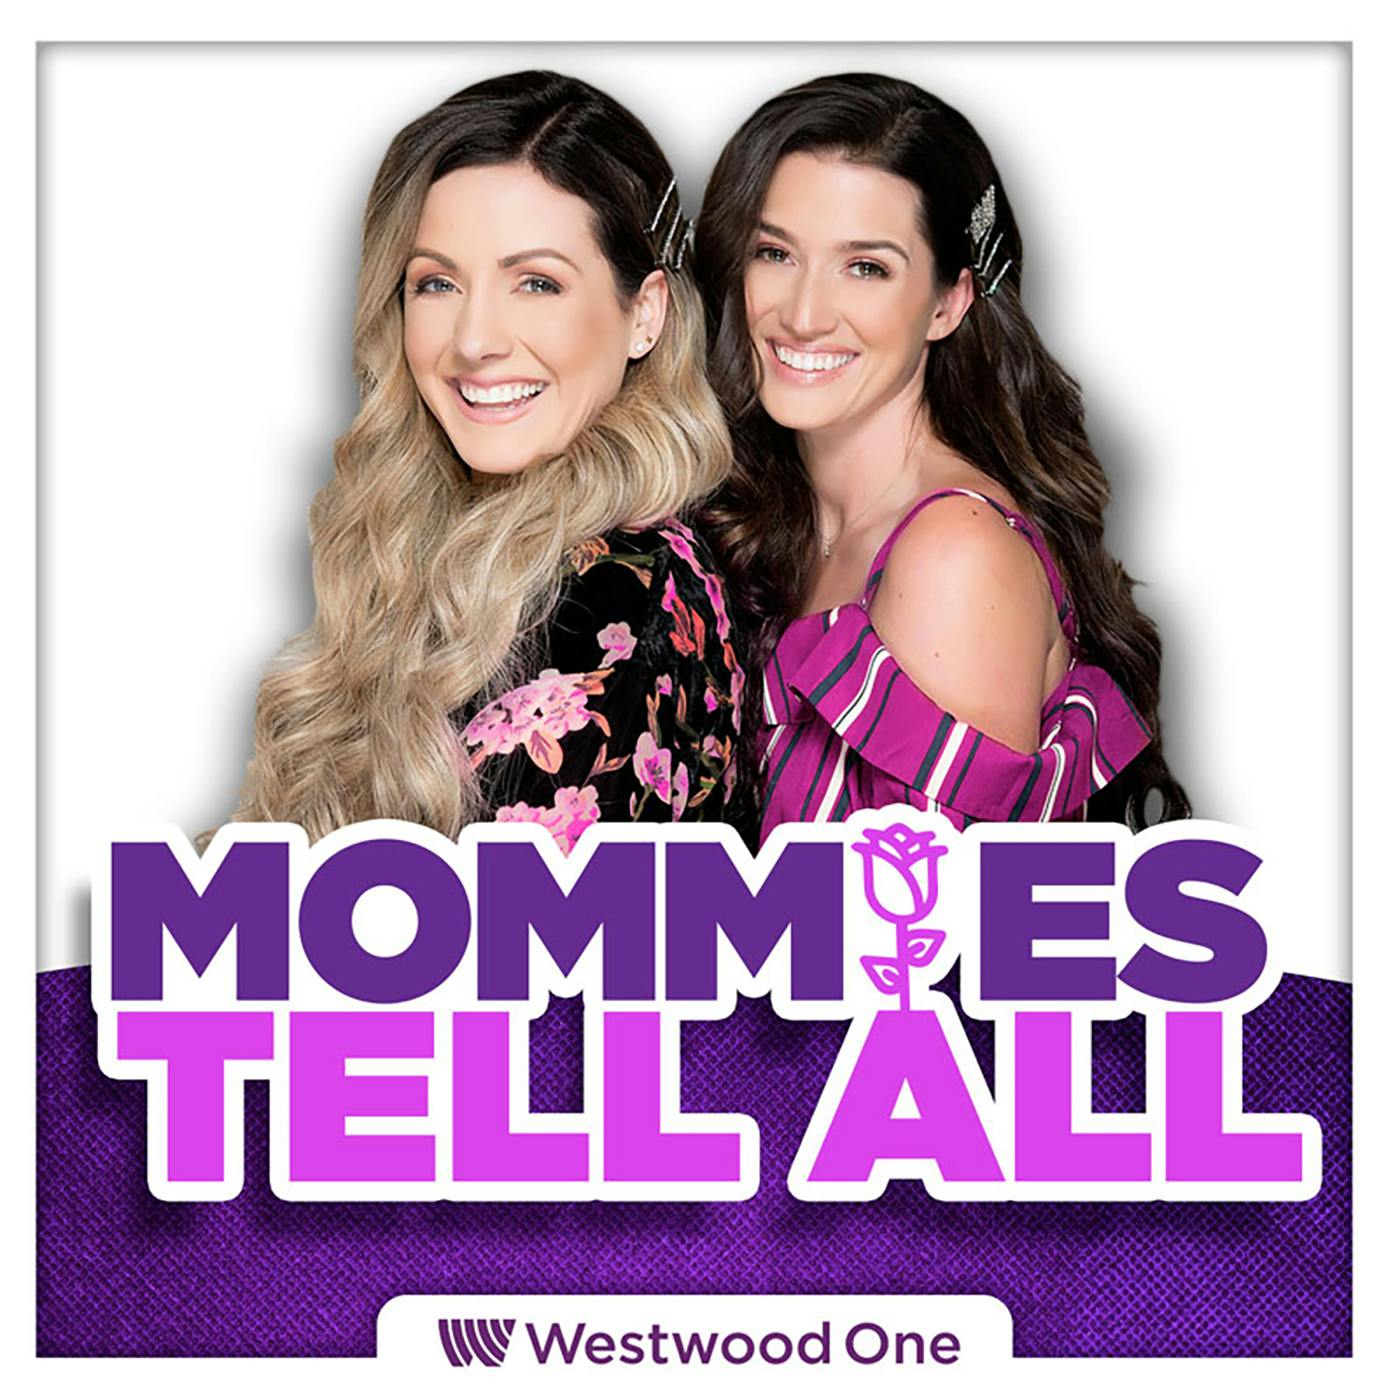 Mommies Tell All: Season 1 Trailer